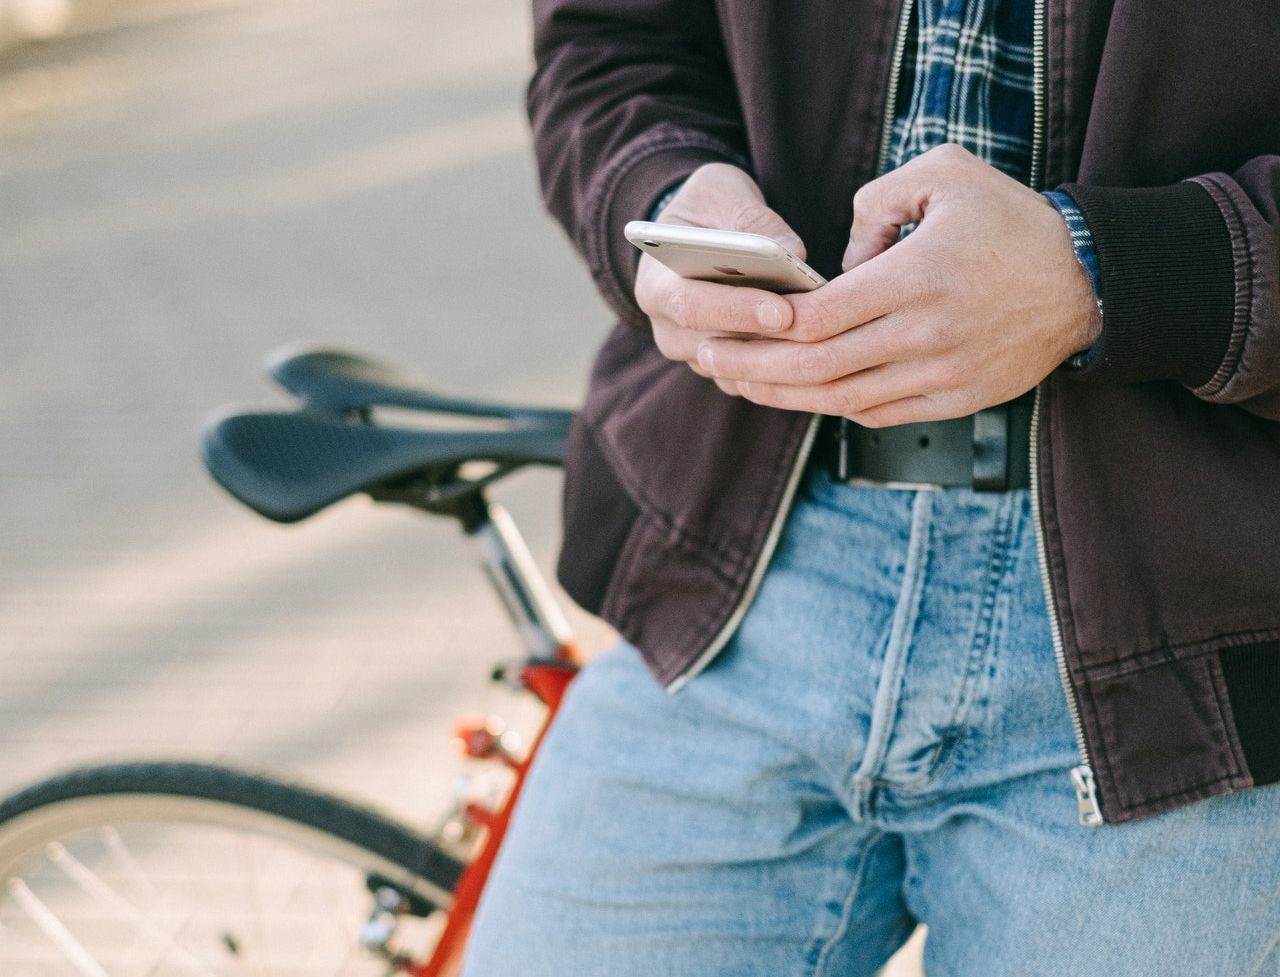  Bicikl pametni telefon.jpg 